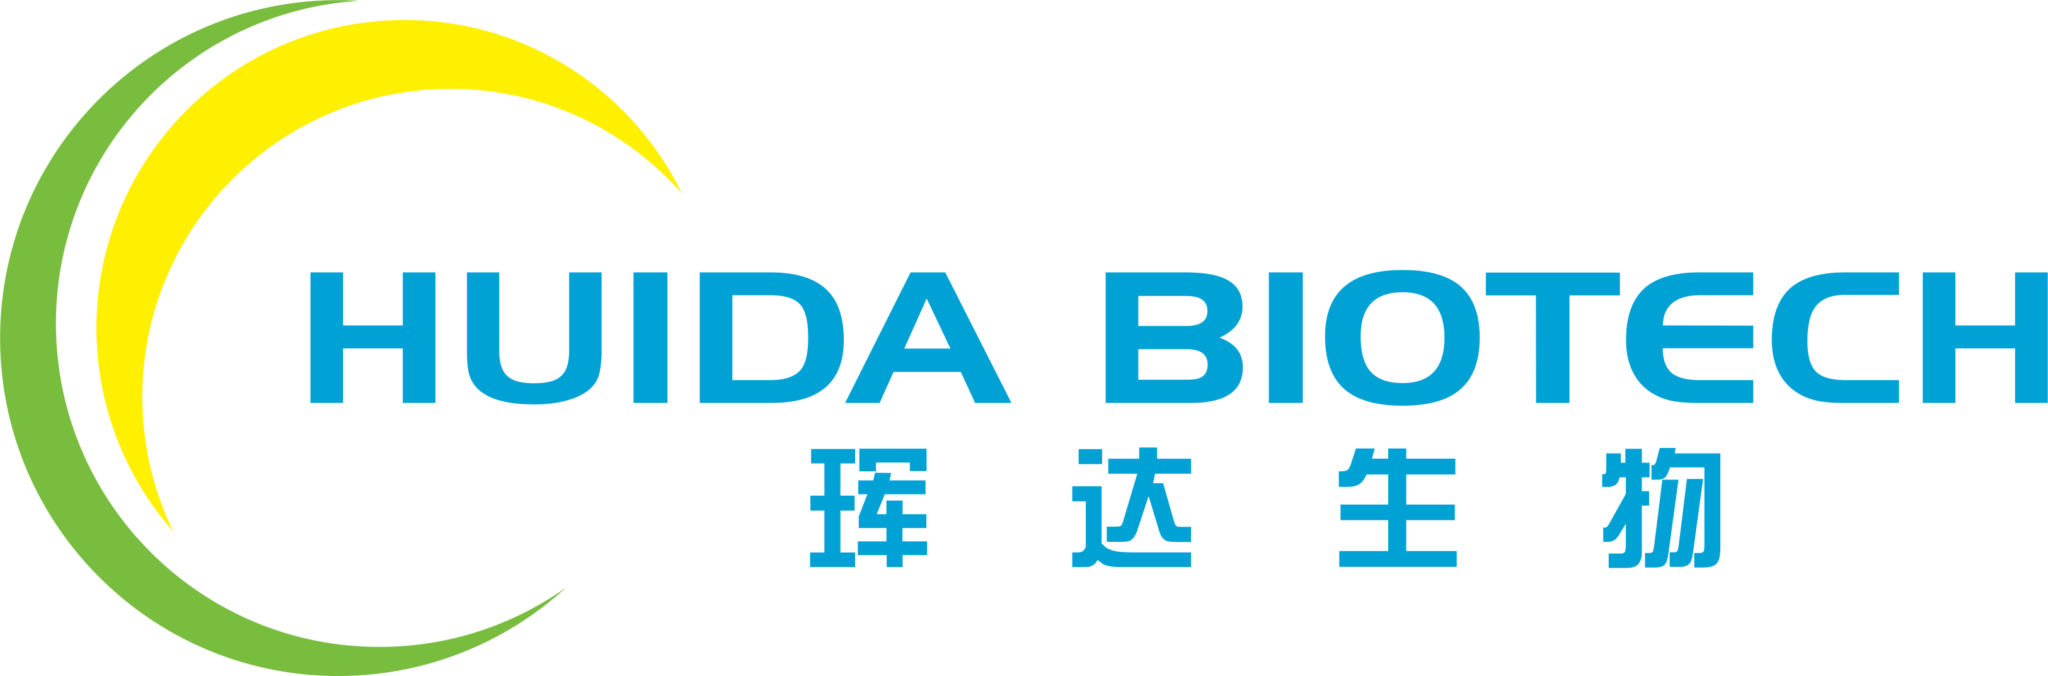 Huida-Biotech-2048x676